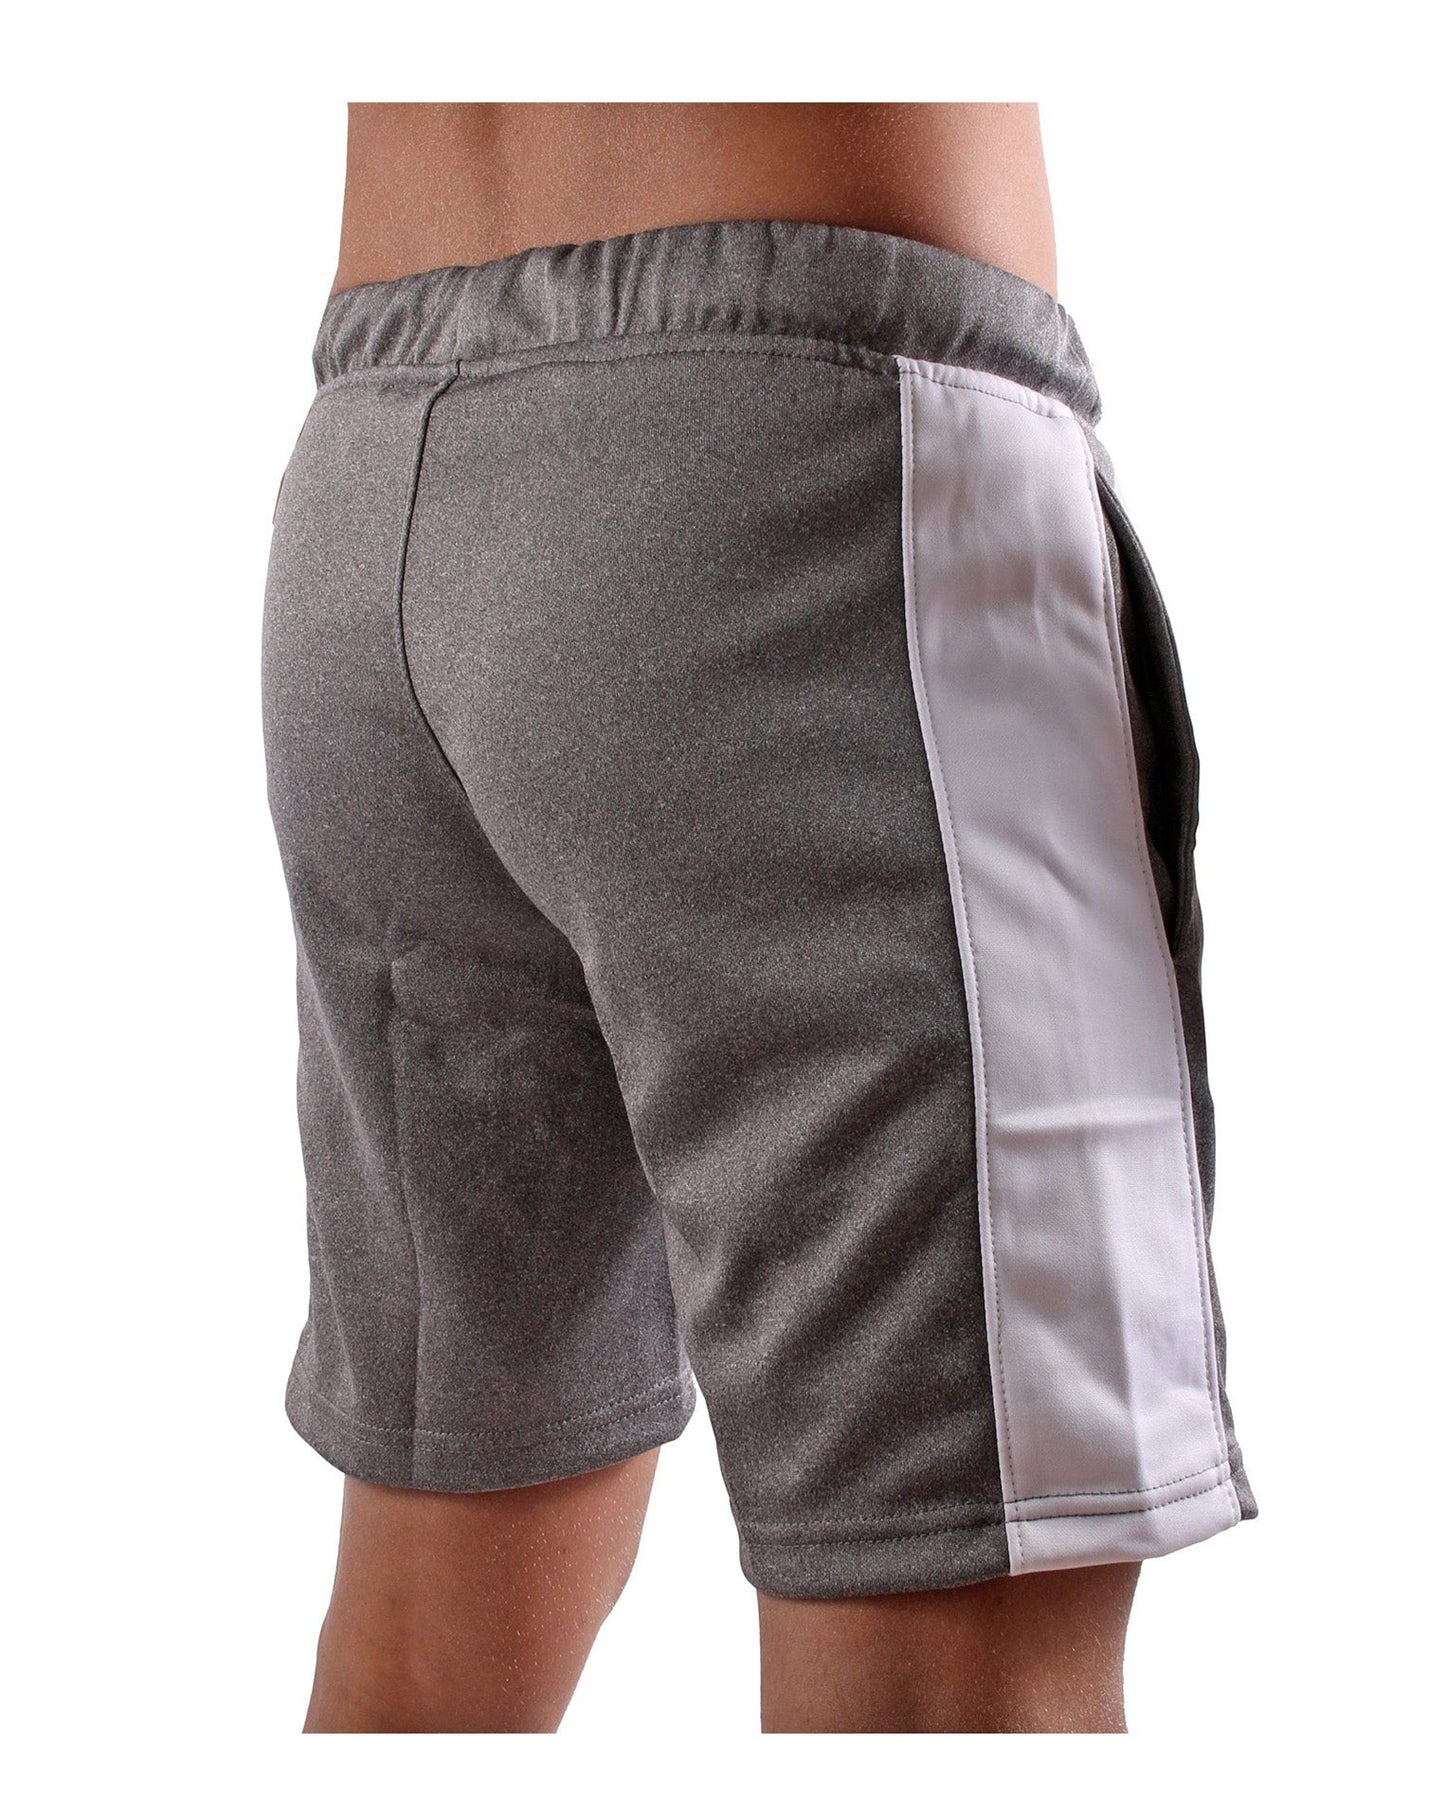 Urban Sport Shorts - Frost Grey - Gym Generation®--www.gymgeneration.ch